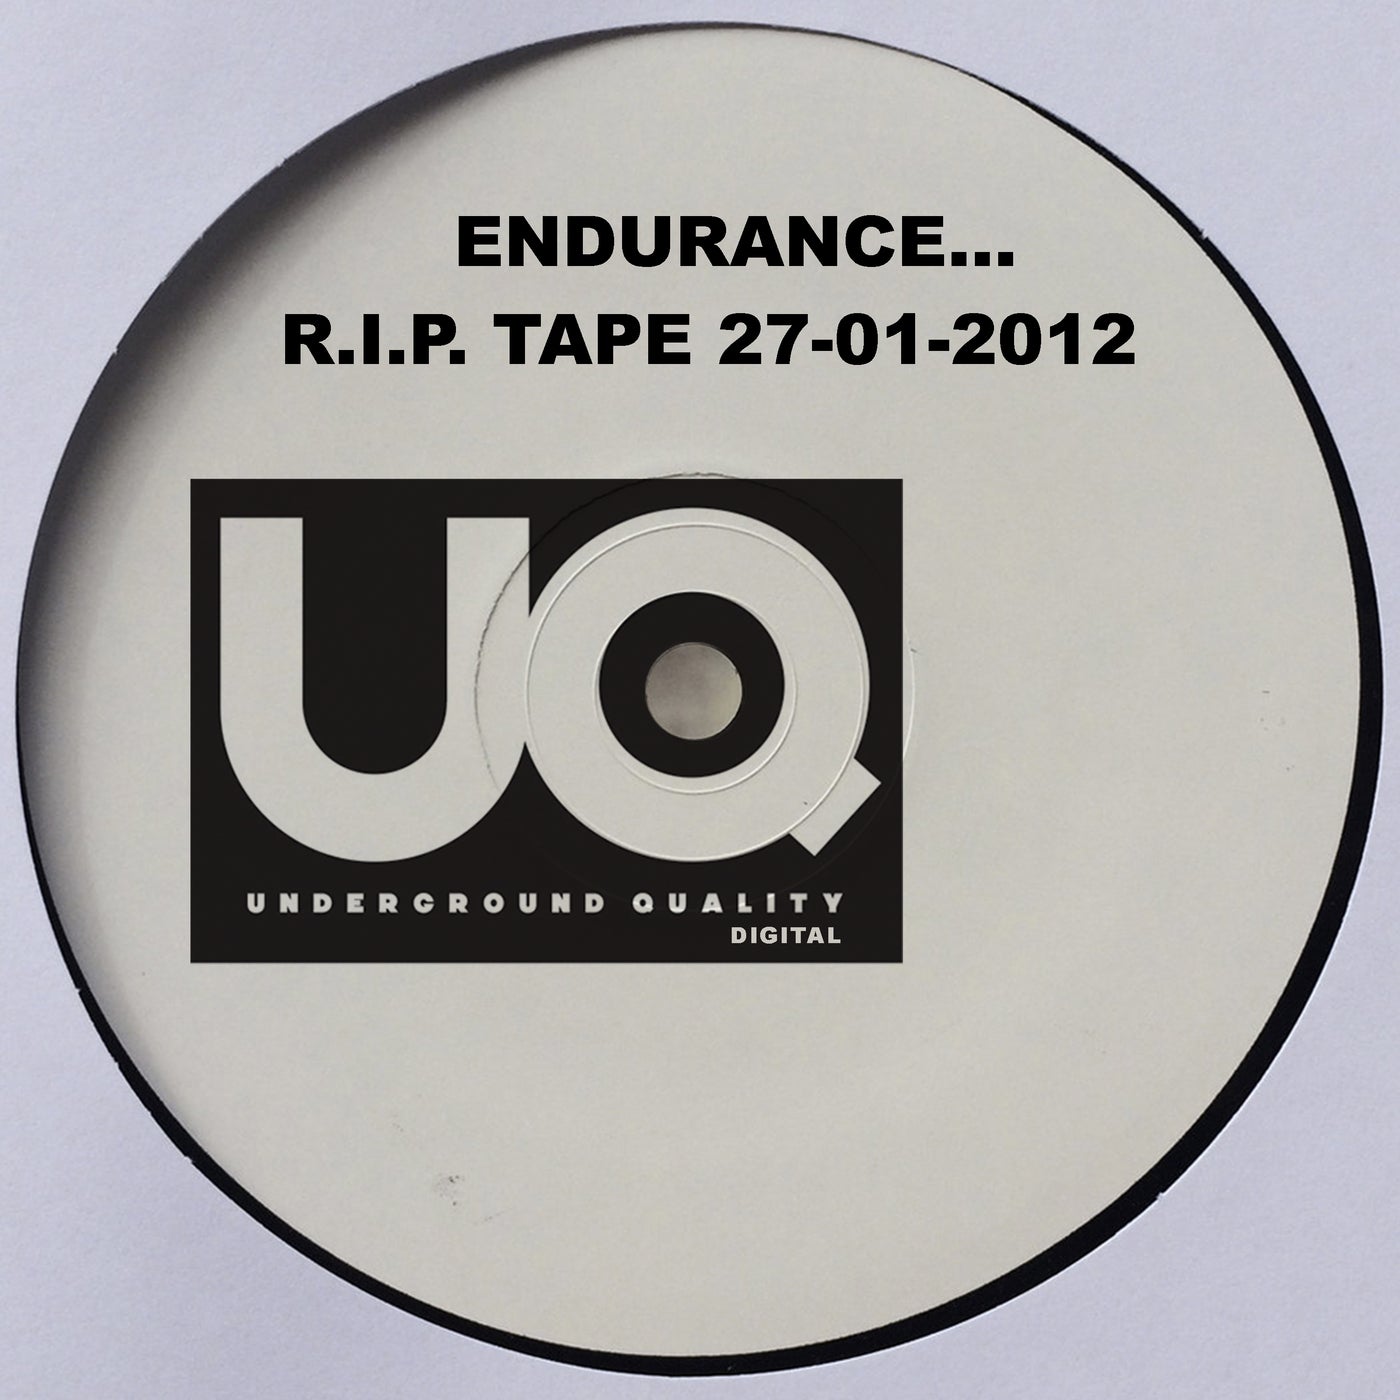 Endurance... R.I.P. Tape 27-01-2012